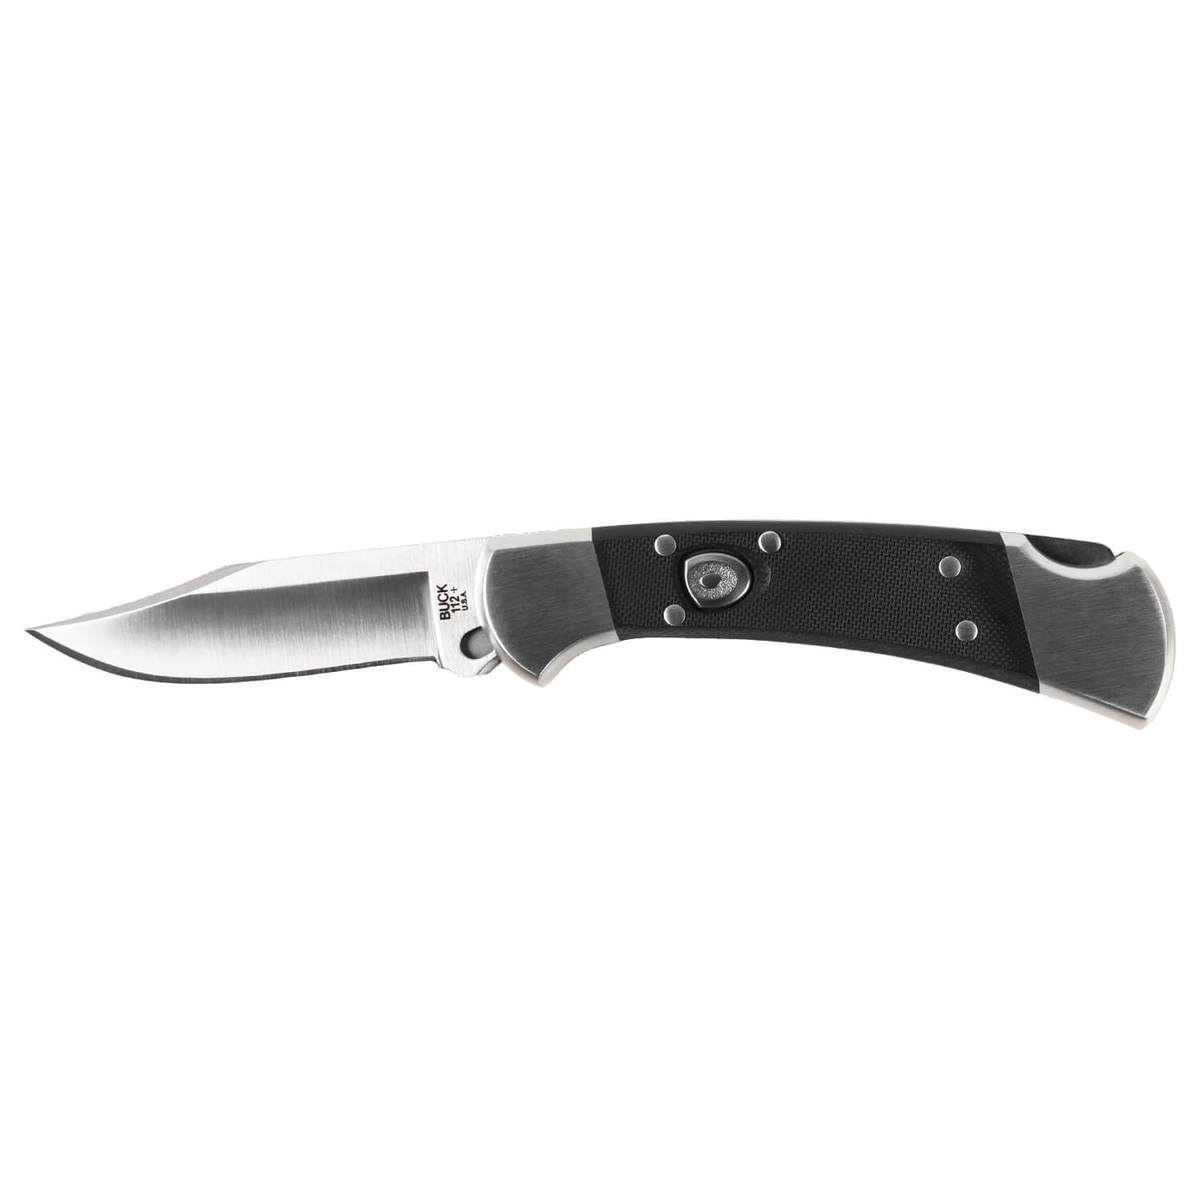 https://www.knives.com/medias/buck-knives-112-auto-elite-3-inch-folding-knife-black-1627513-1.jpg?context=bWFzdGVyfGltYWdlc3wzODk5MHxpbWFnZS9qcGVnfGFXMWhaMlZ6TDJnMlpTOW9OamN2T1RNMk56TTFORE14TURZNE5pNXFjR2N8OTkxZTJmYWMzMjNlZmE1MzllYzE3NDljNmYyYTRkYmY0Njg1MTVhMTVjMDA0YWQwMmY3MjY4ZDQ1MjdhOGUxOQ